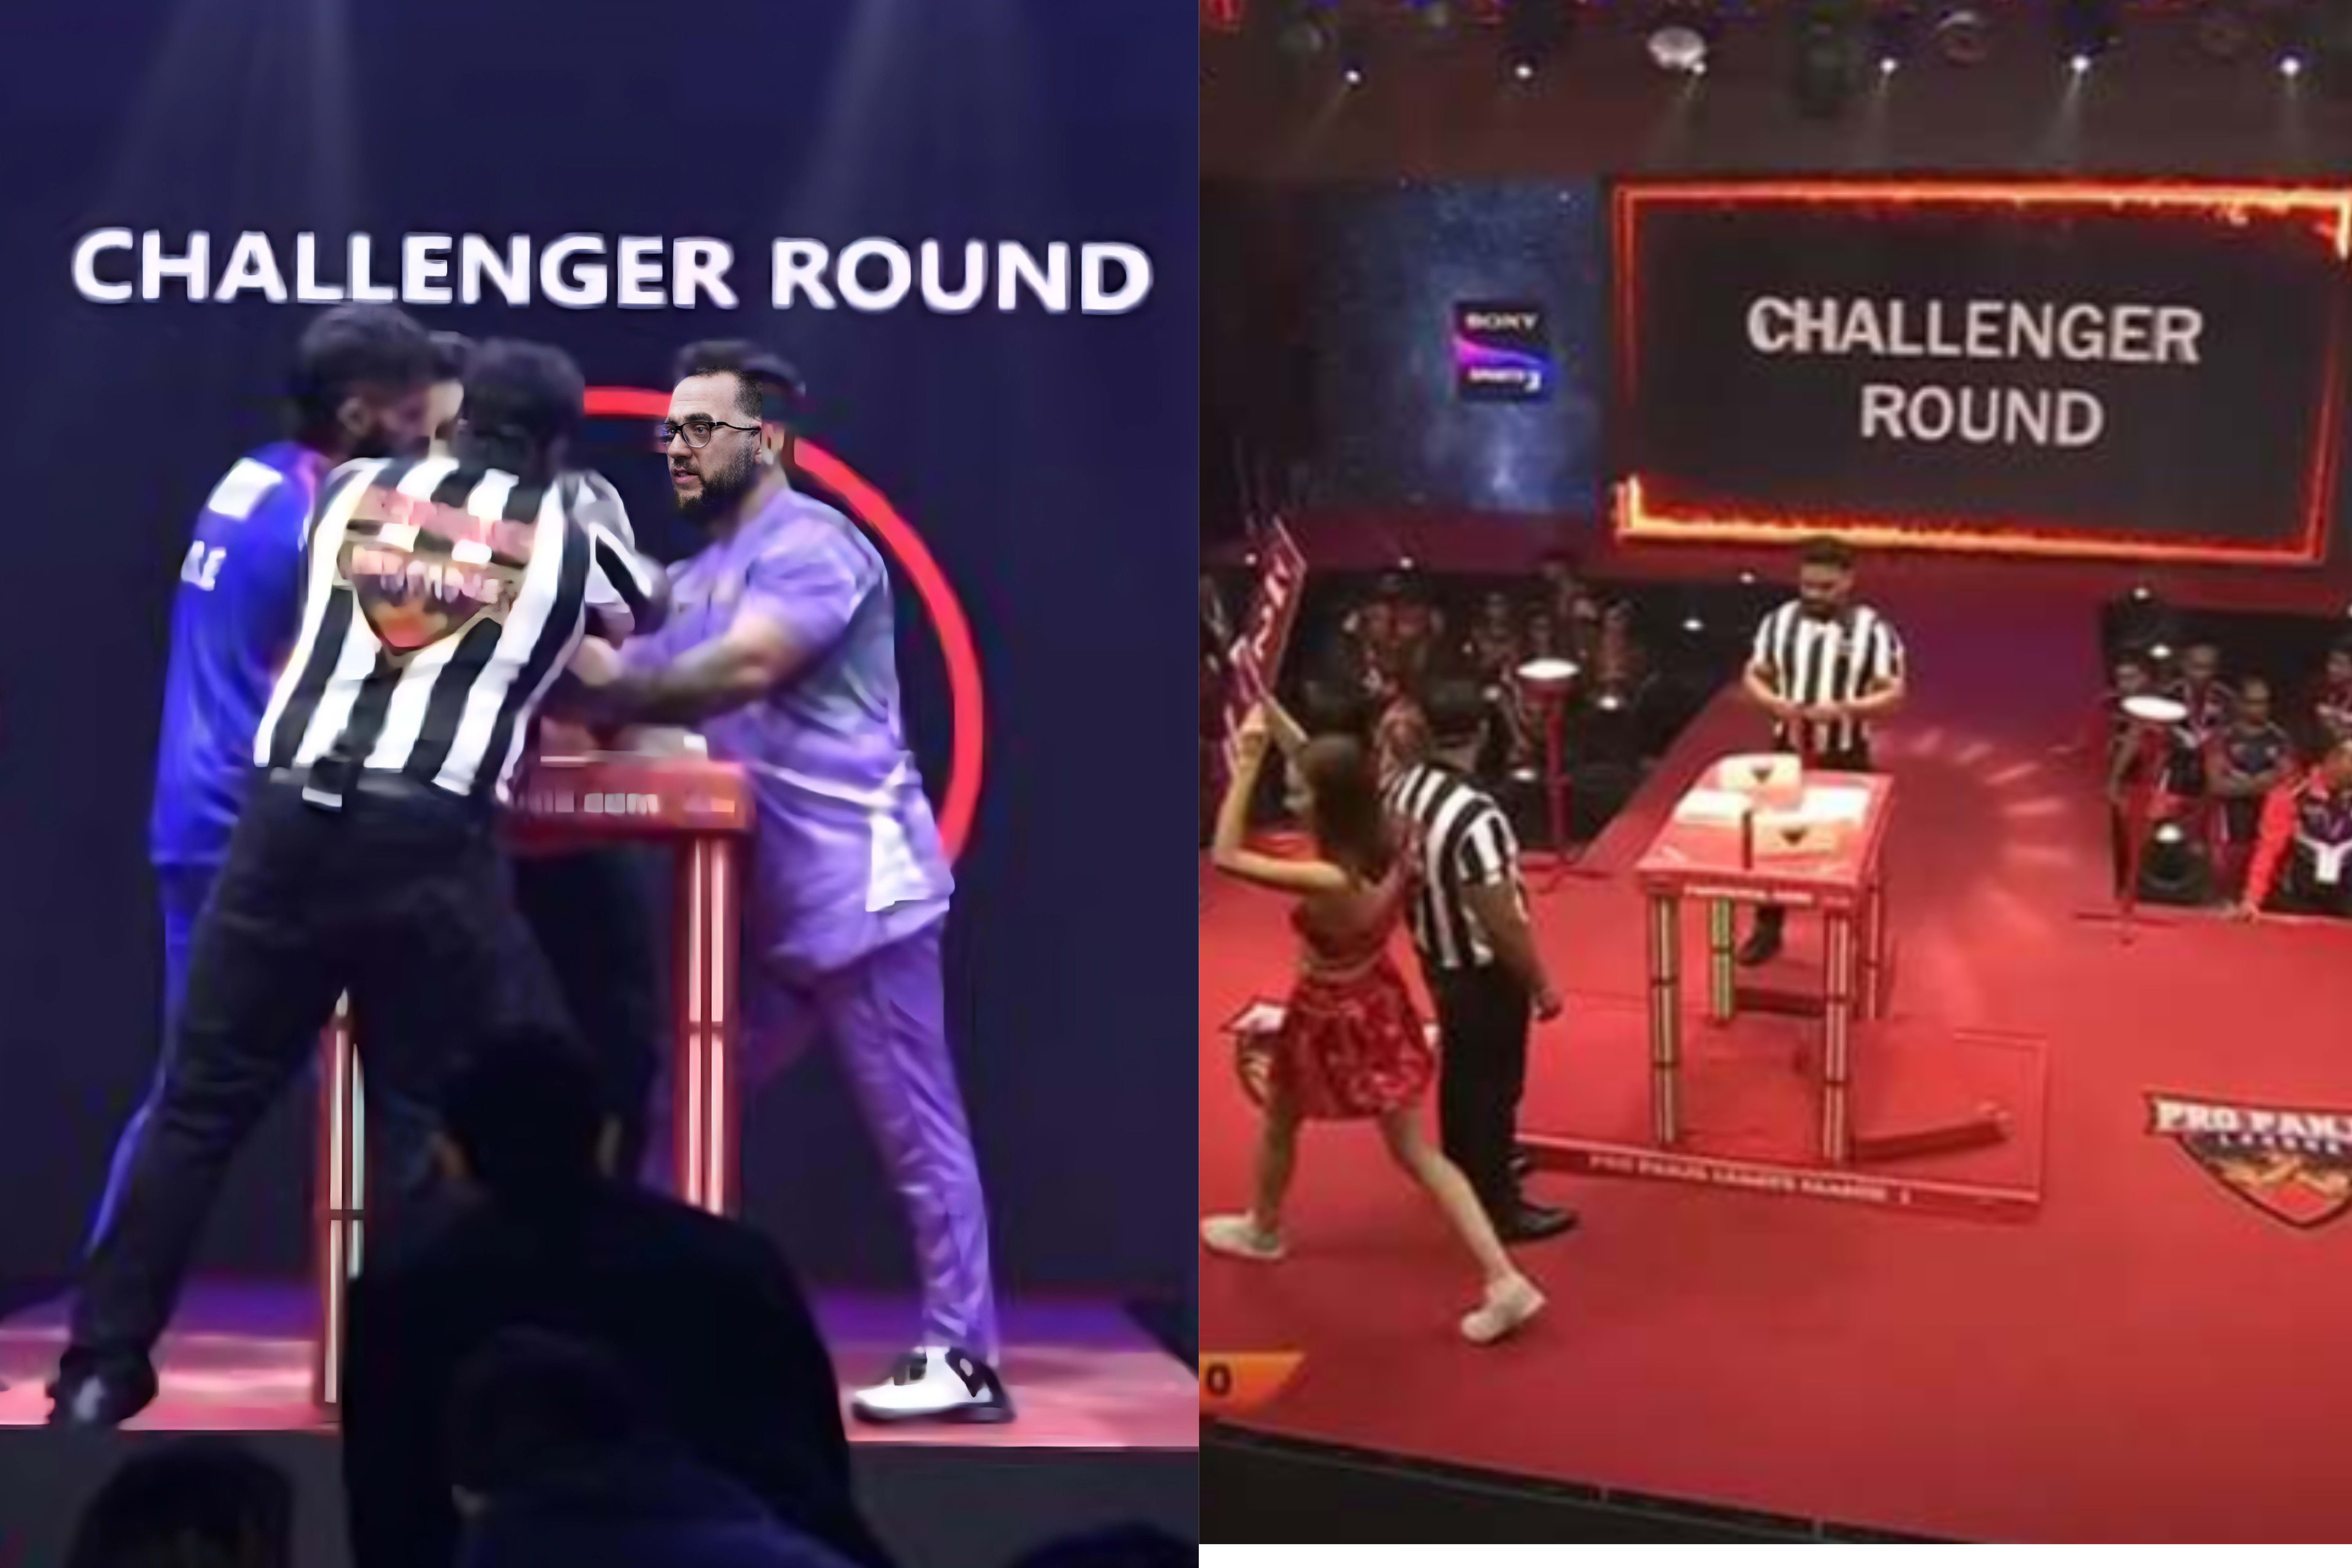 Challenger Round